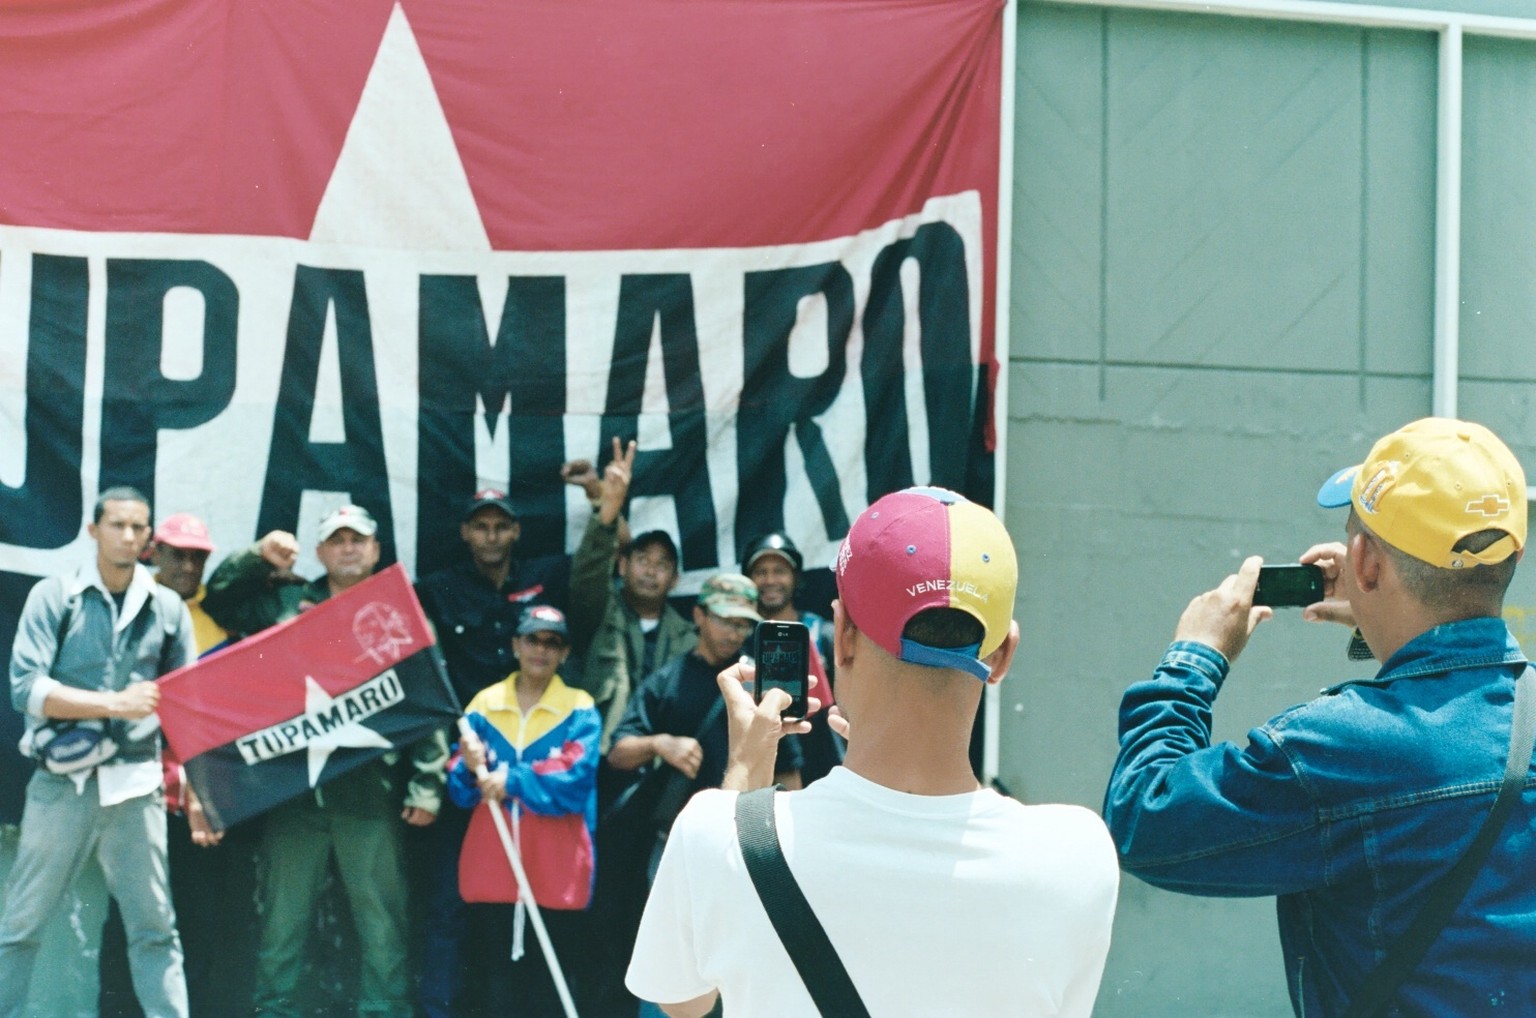 Die «Tupamaro» sind eine Miliz und verfolgen das Ziel, das Erbe des verstorbenen sozialistischen Präsidenten Hugo Chávez zu verteidigen und weiterzutragen.&nbsp;